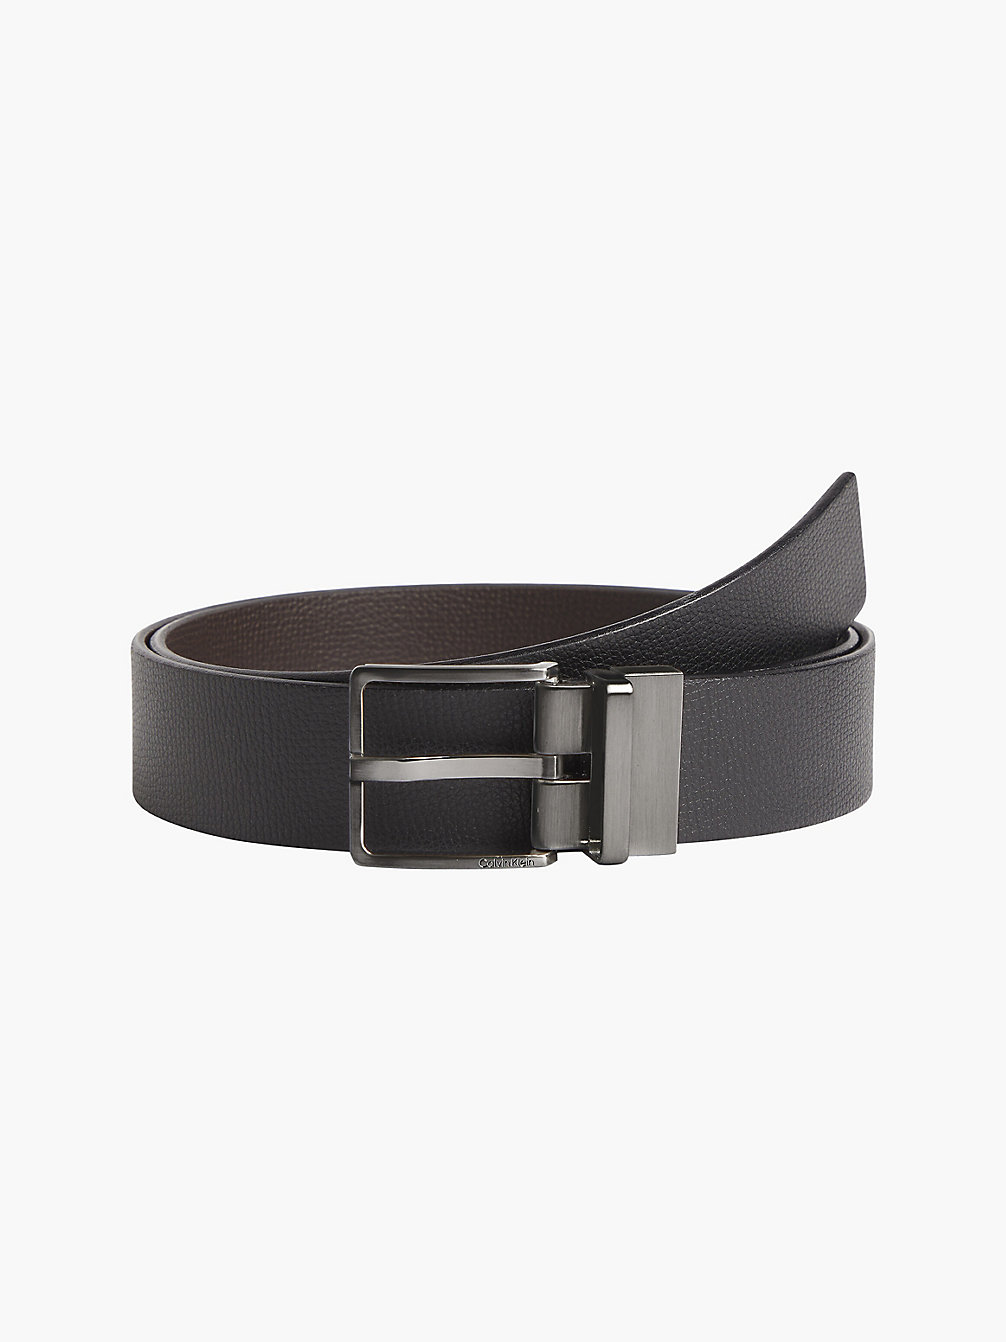 BLACK/DARK BROWN Reversible Leather Belt undefined men Calvin Klein